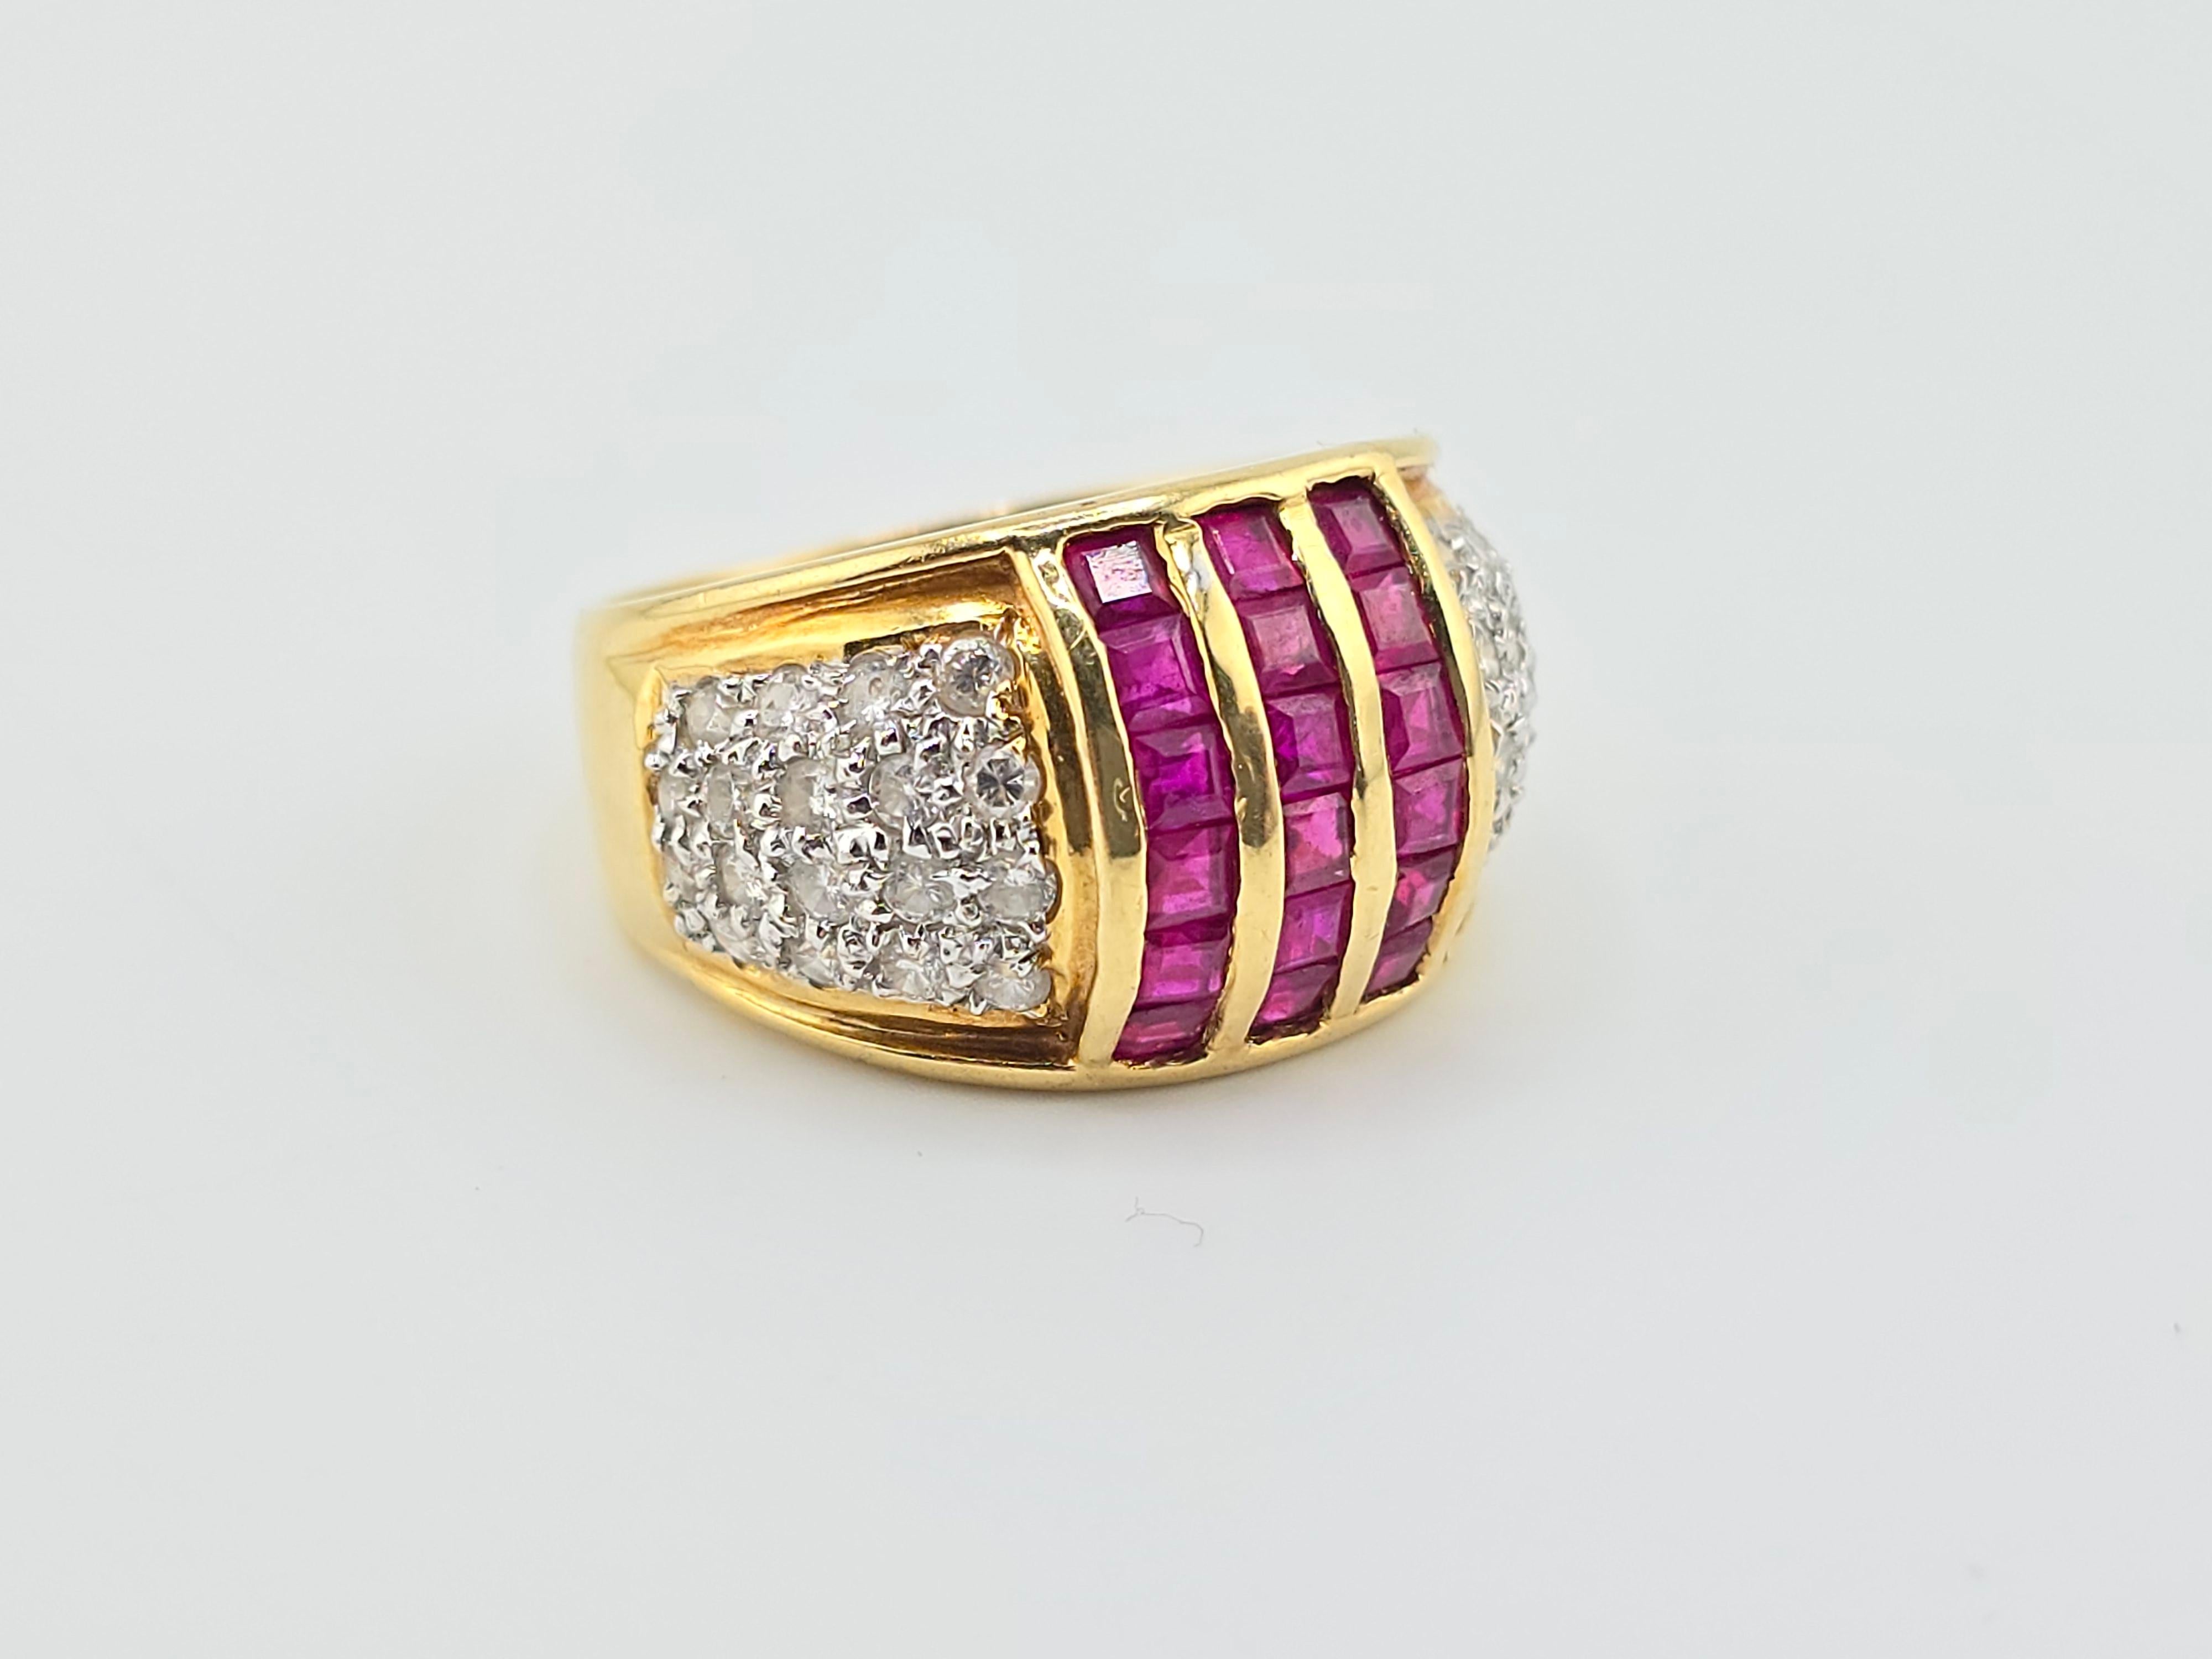 Dies ist eine wunderbare Rubin und Diamant Gelbgold Ring aus feinem 18 Karat Gold gemacht. Die Qualität der Diamanten ist großartig mit einer Mischung aus  VS zu SI Klarheit.  Die Rubine haben eine schöne, gleichmäßige purpurrote Farbe. Bei